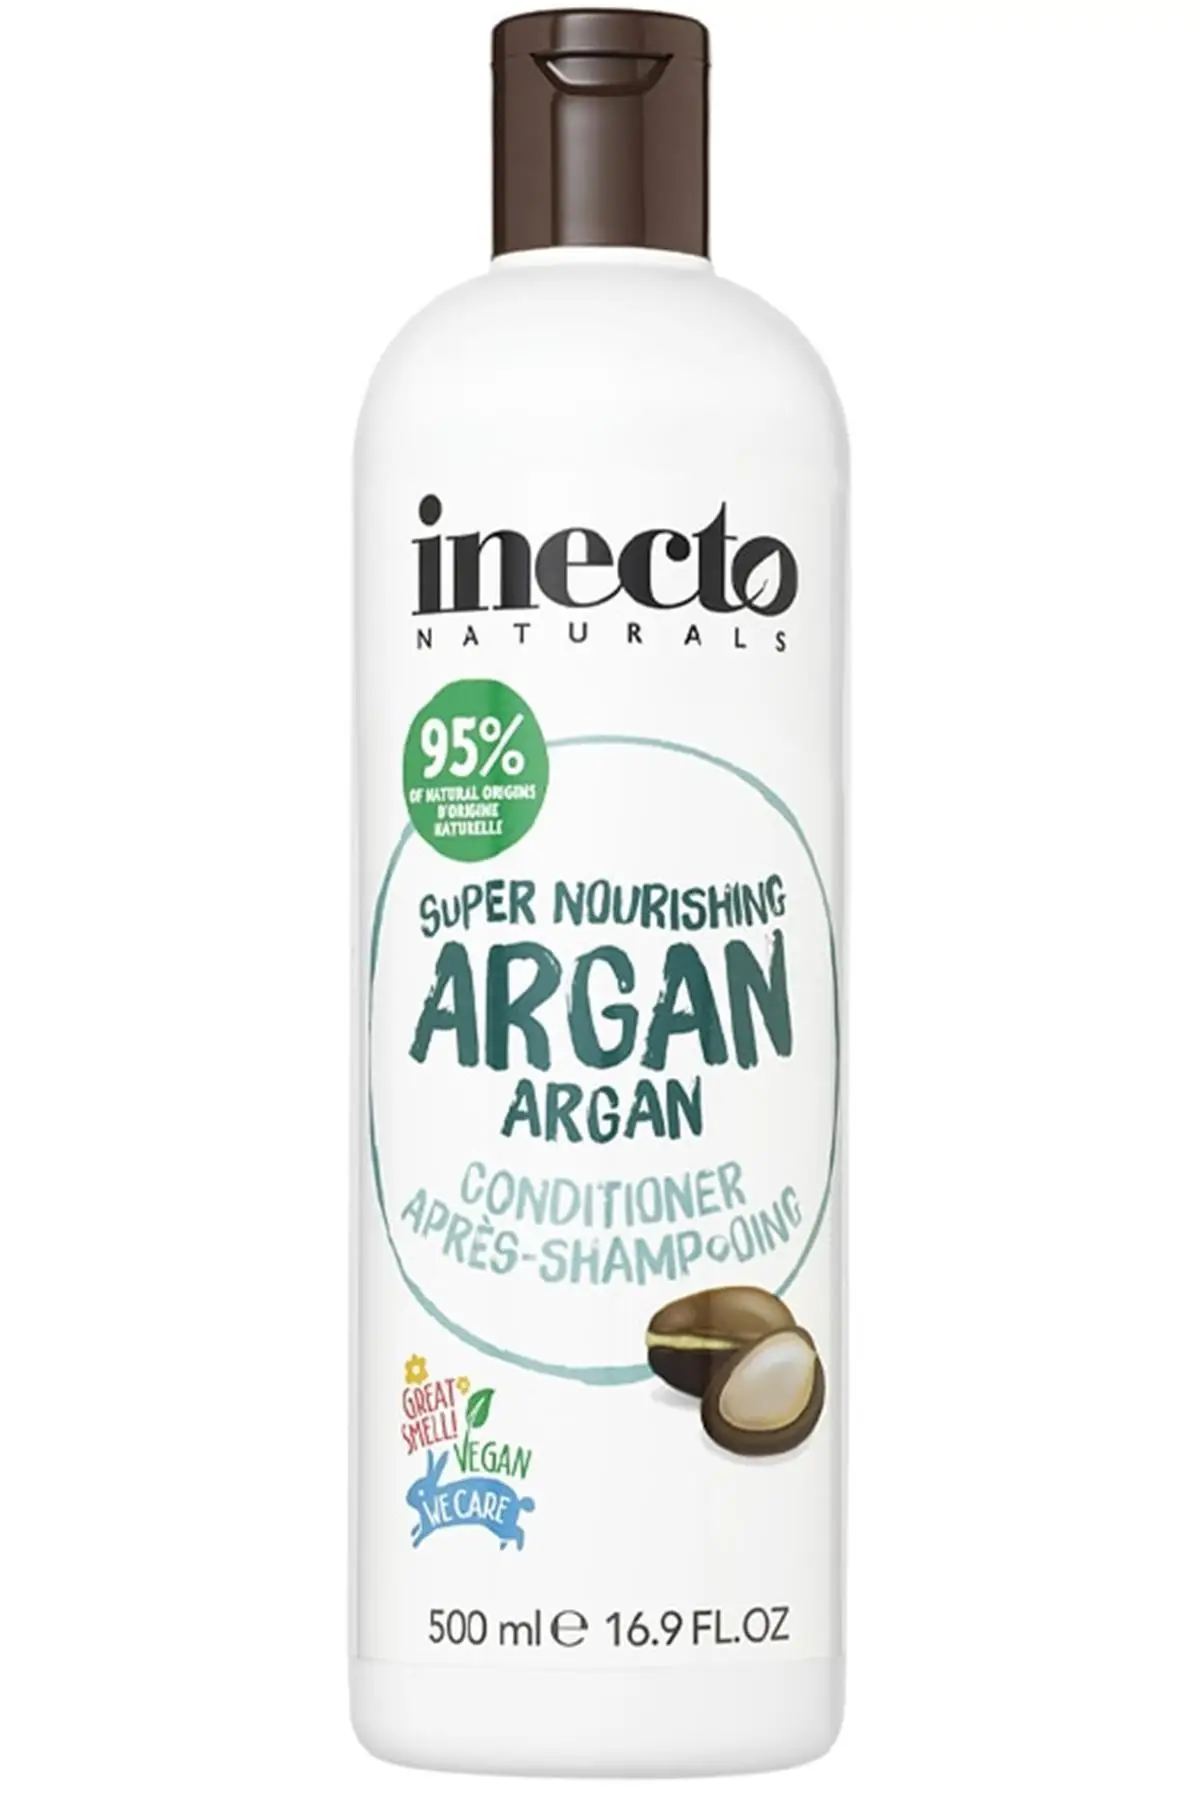 

Бренд: Inecto Naturals аргановый крем для ухода за волосами 500 мл Категория: кондиционер для волос